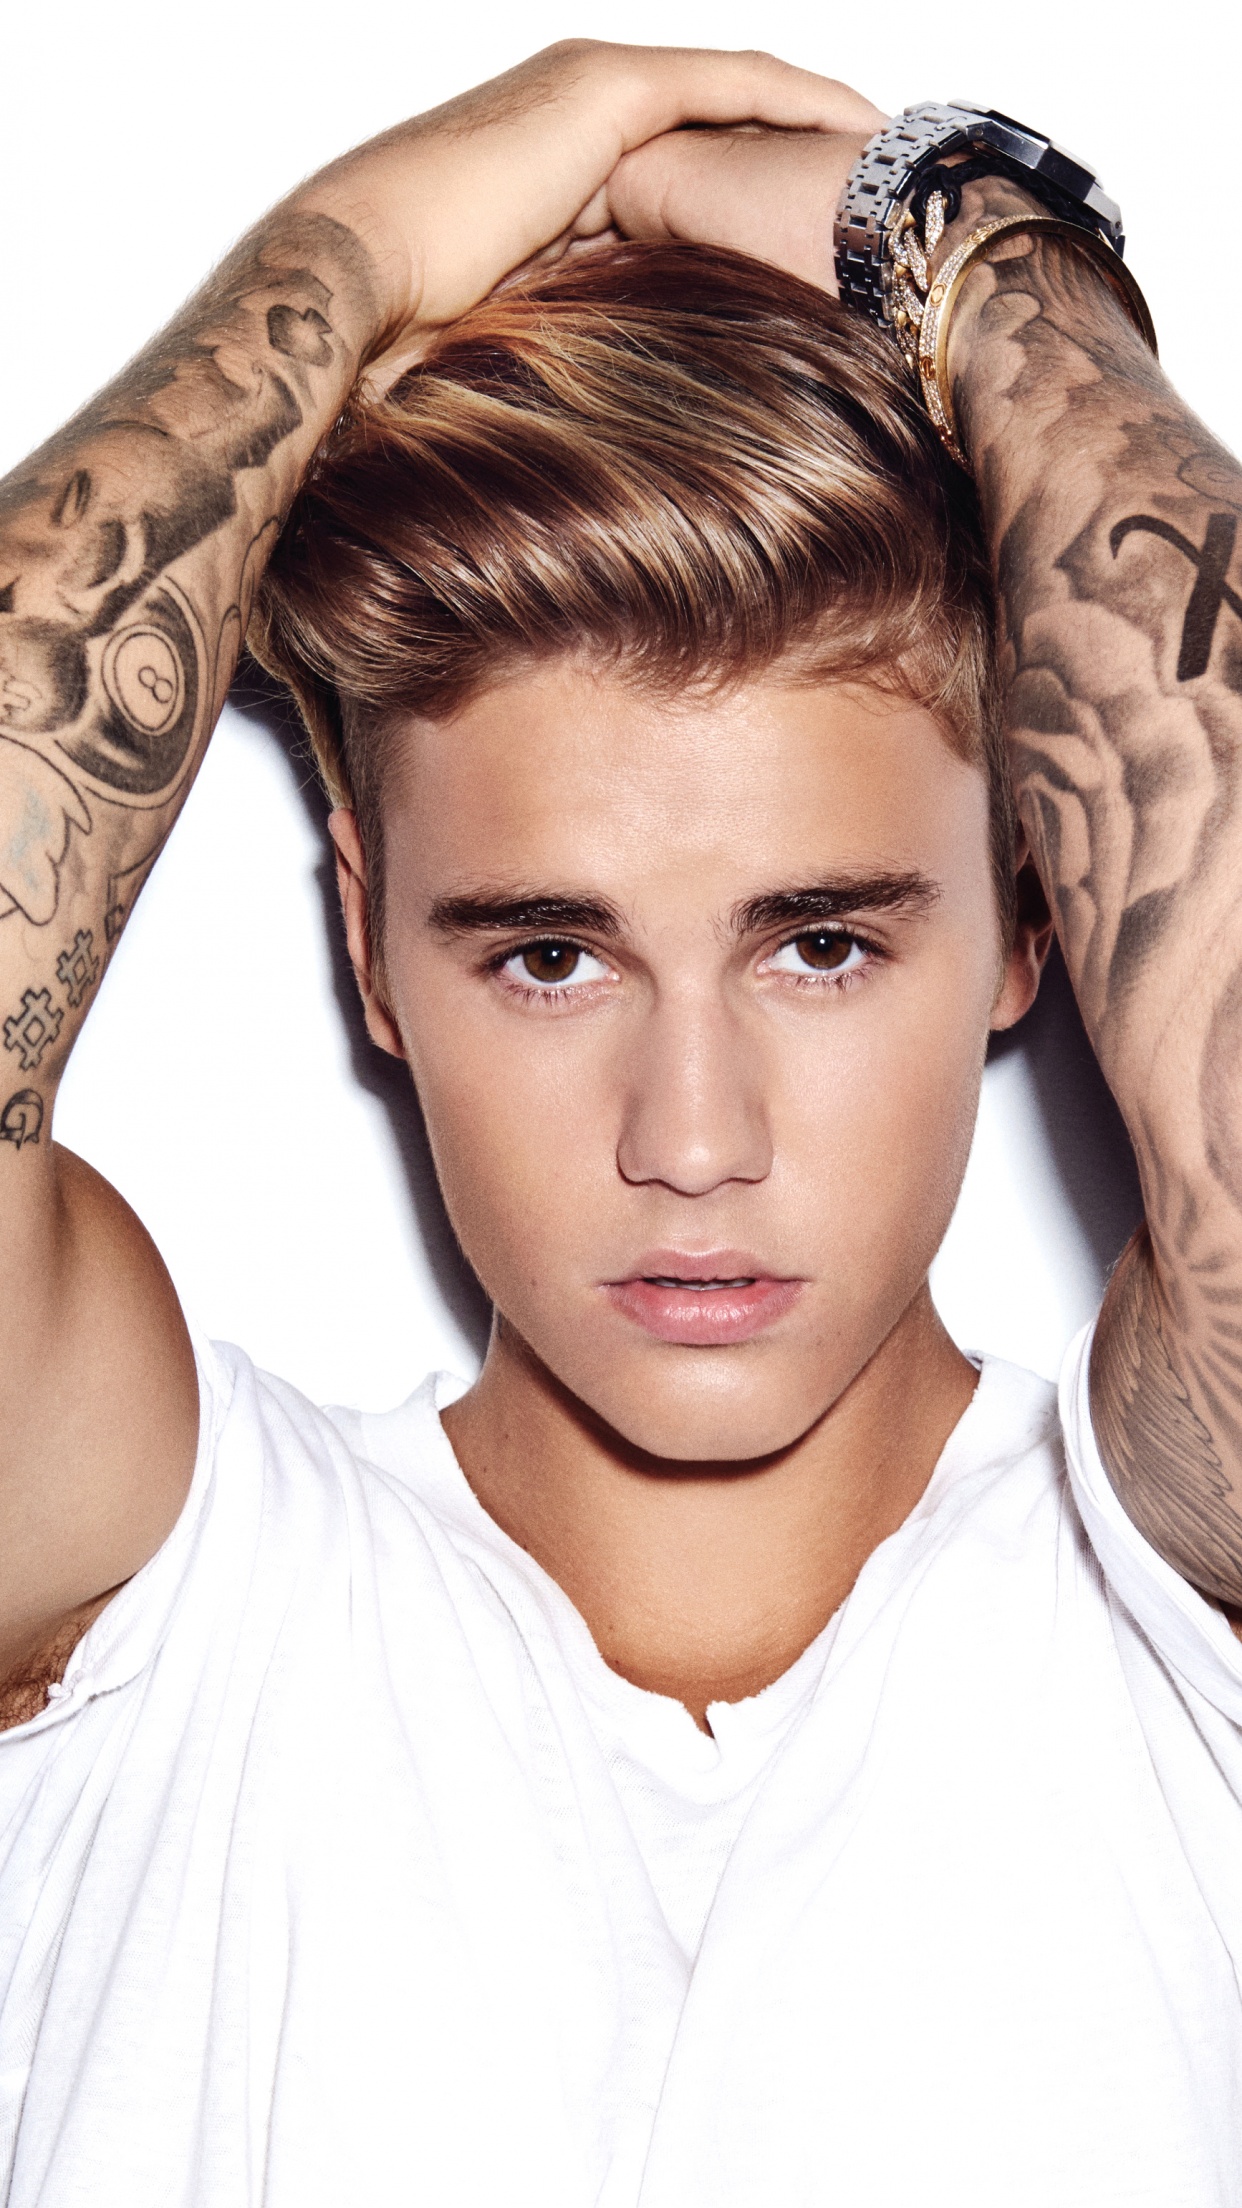 13 Justin Bieber Wallpapers  WallpaperSafari